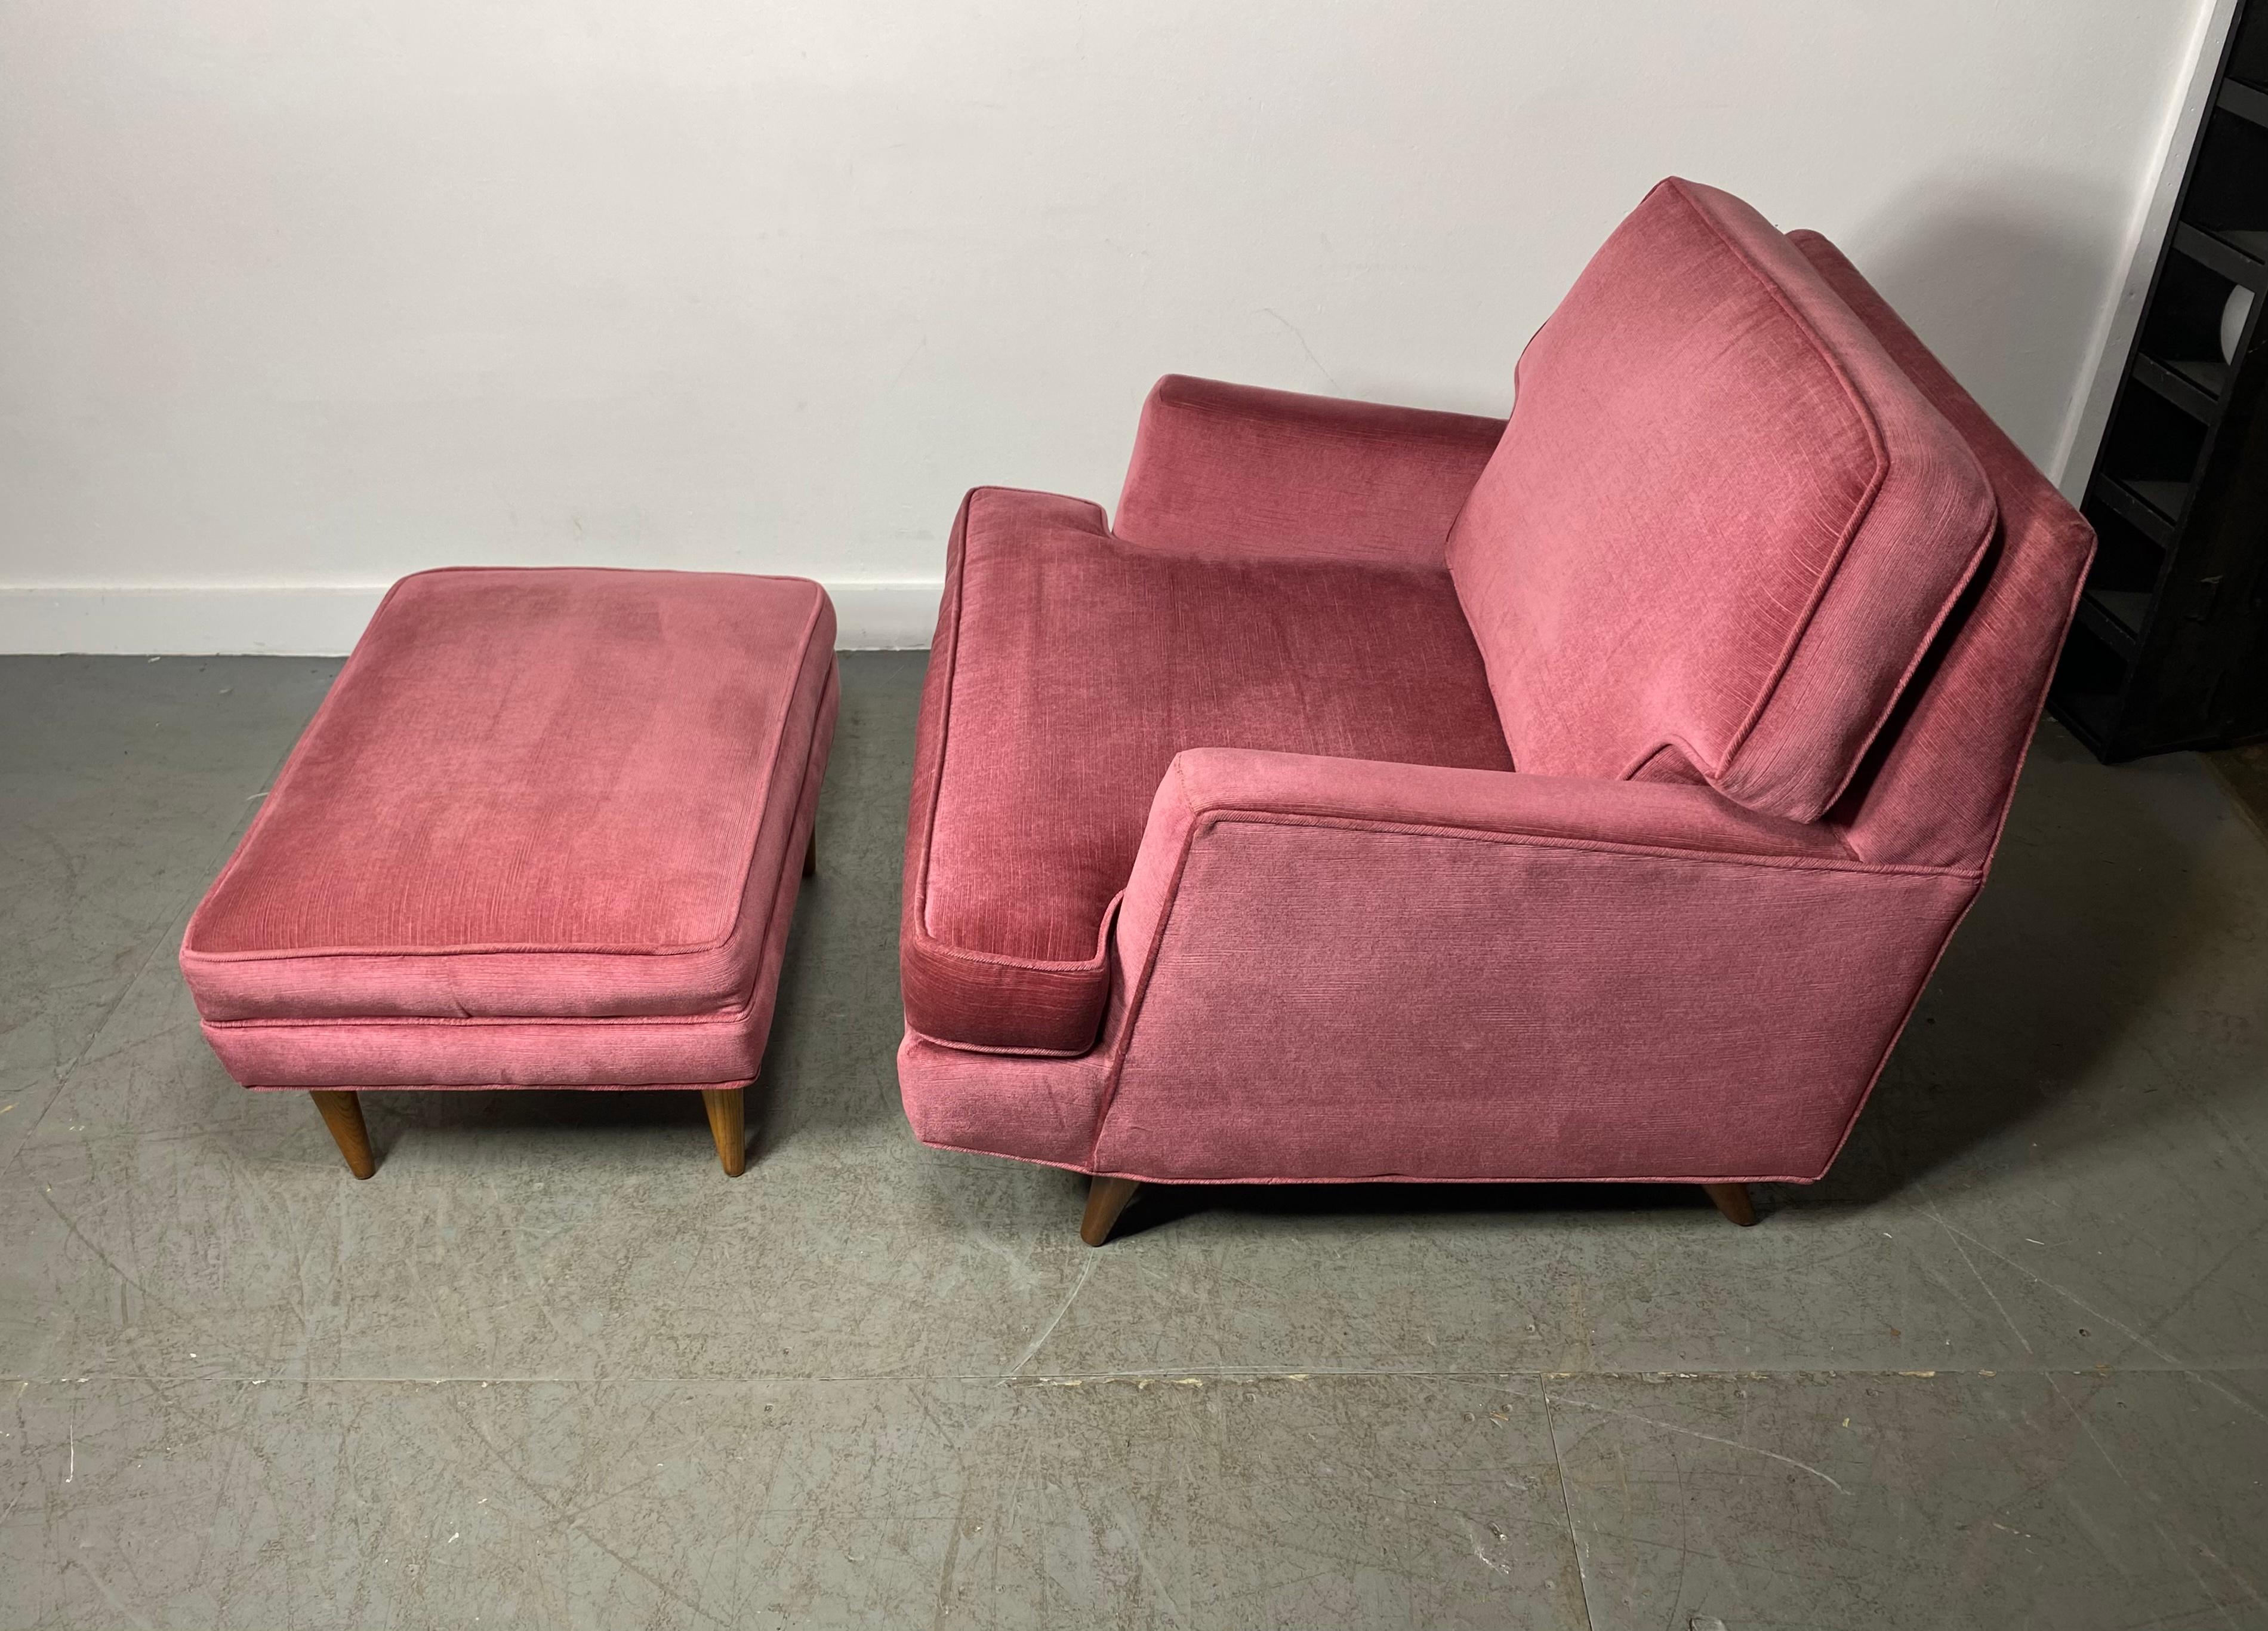 Stunning Modernist Lounge Chair & Ott Oman by Roger Springer for Dunbar For Sale 3